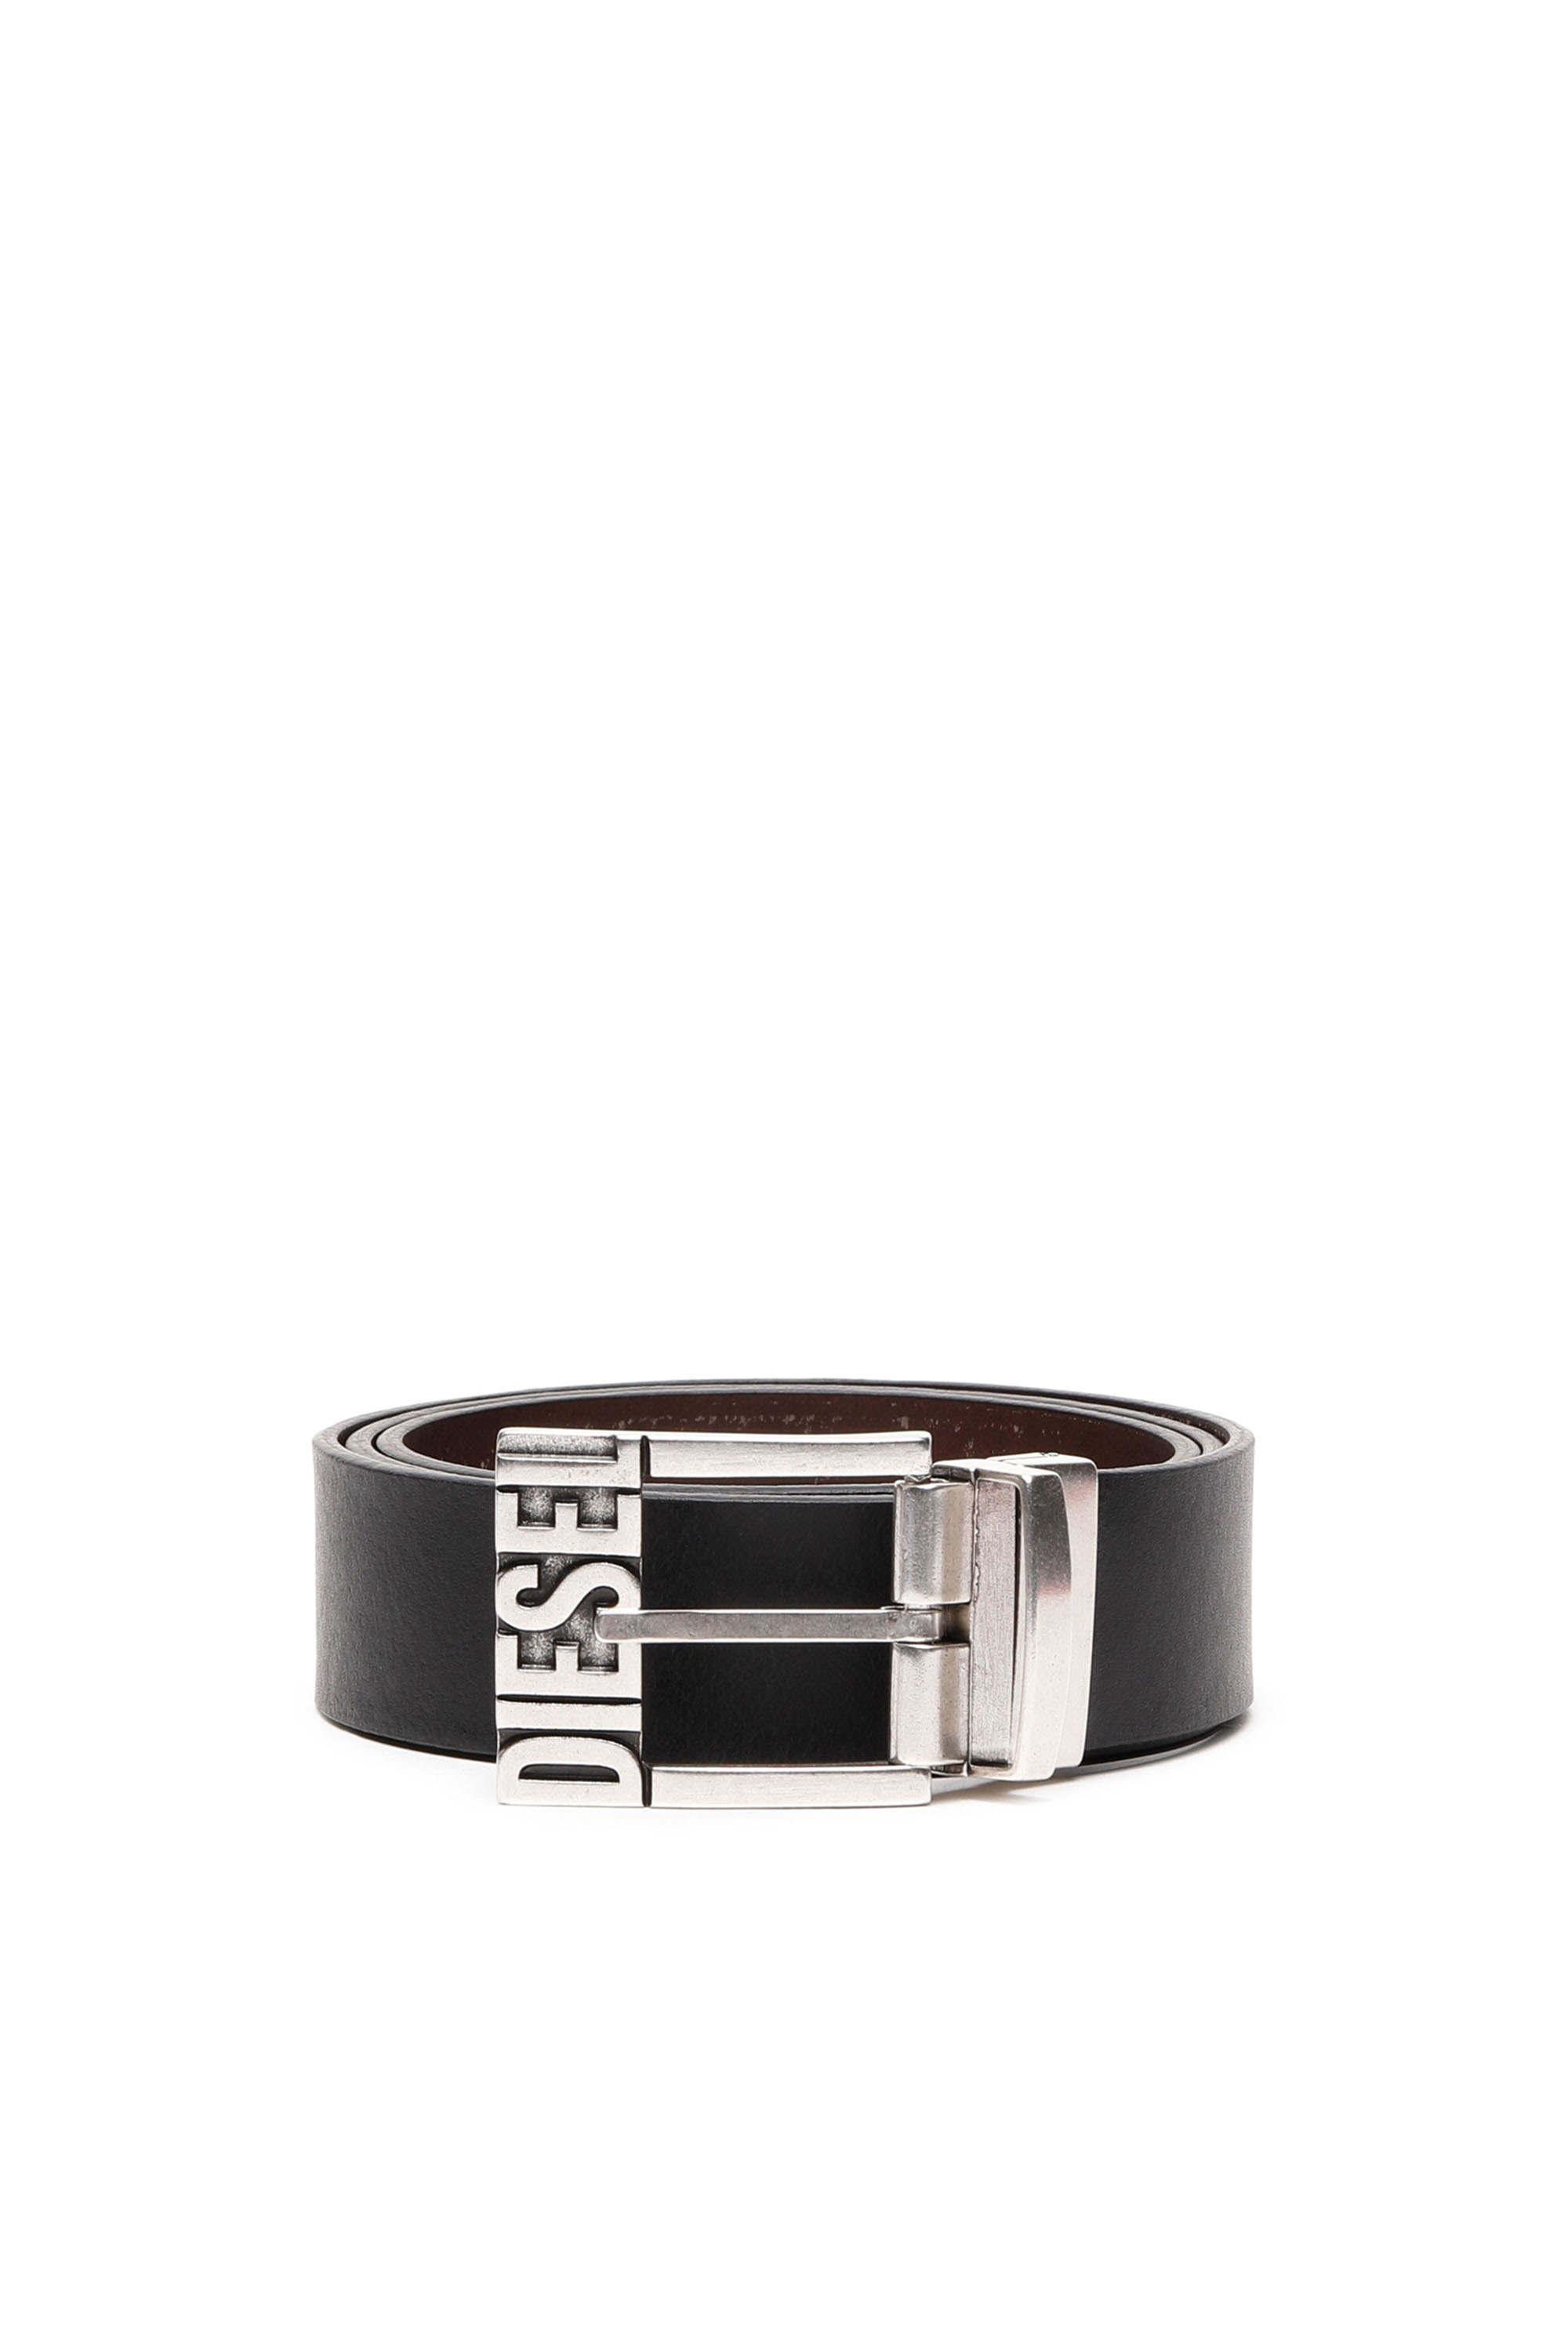 Diesel Belt - B-SHIFT II belt black